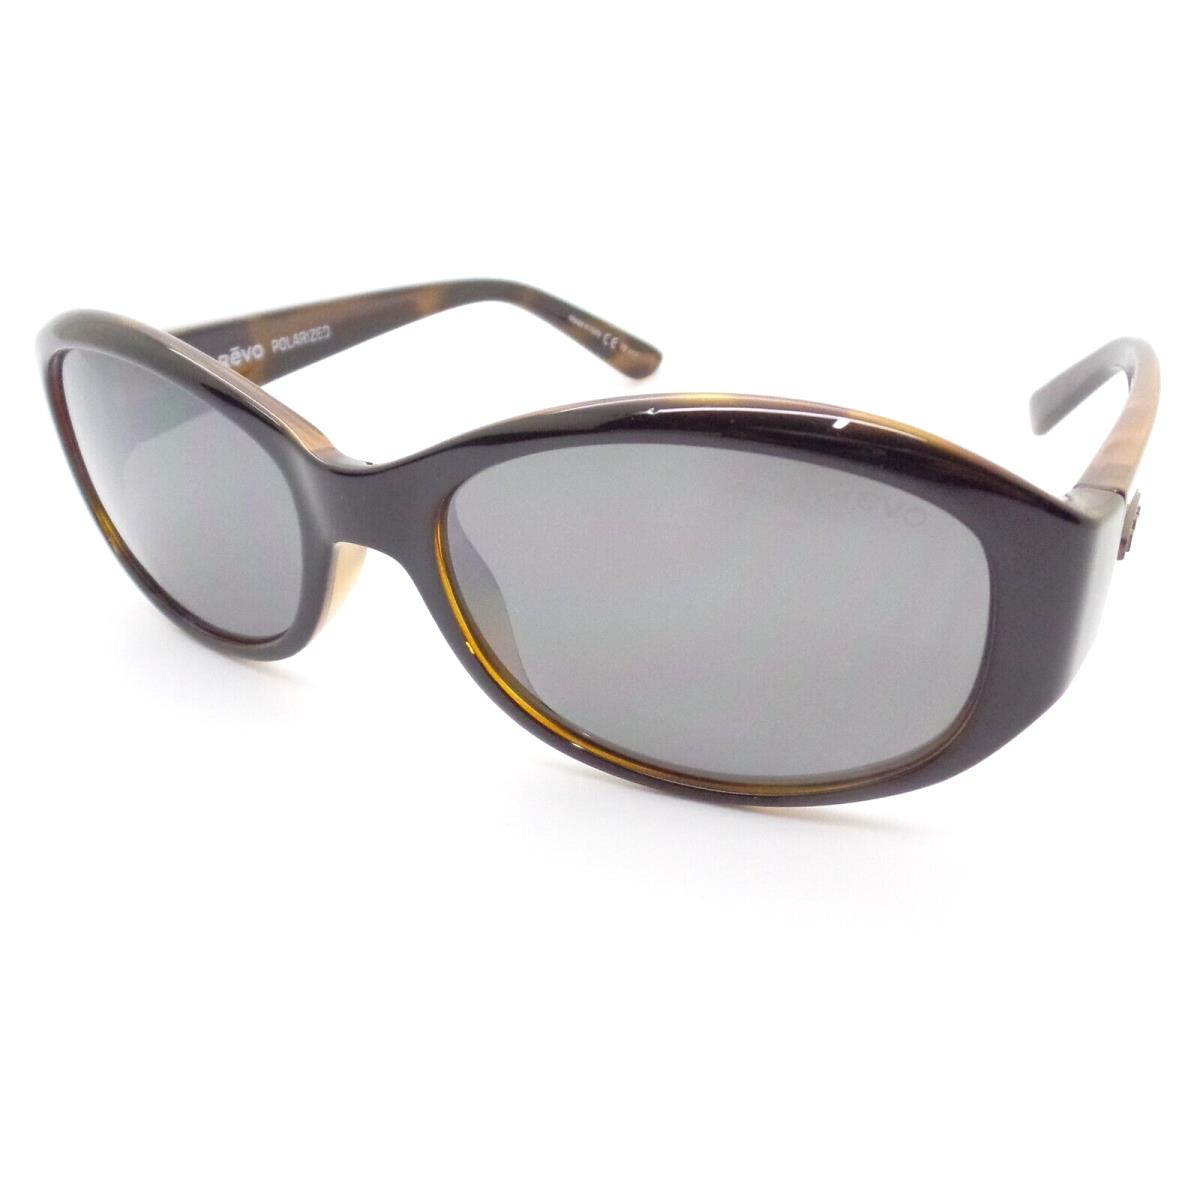 Revo sunglasses  - Frame: Black Honey Tort, Lens: 0